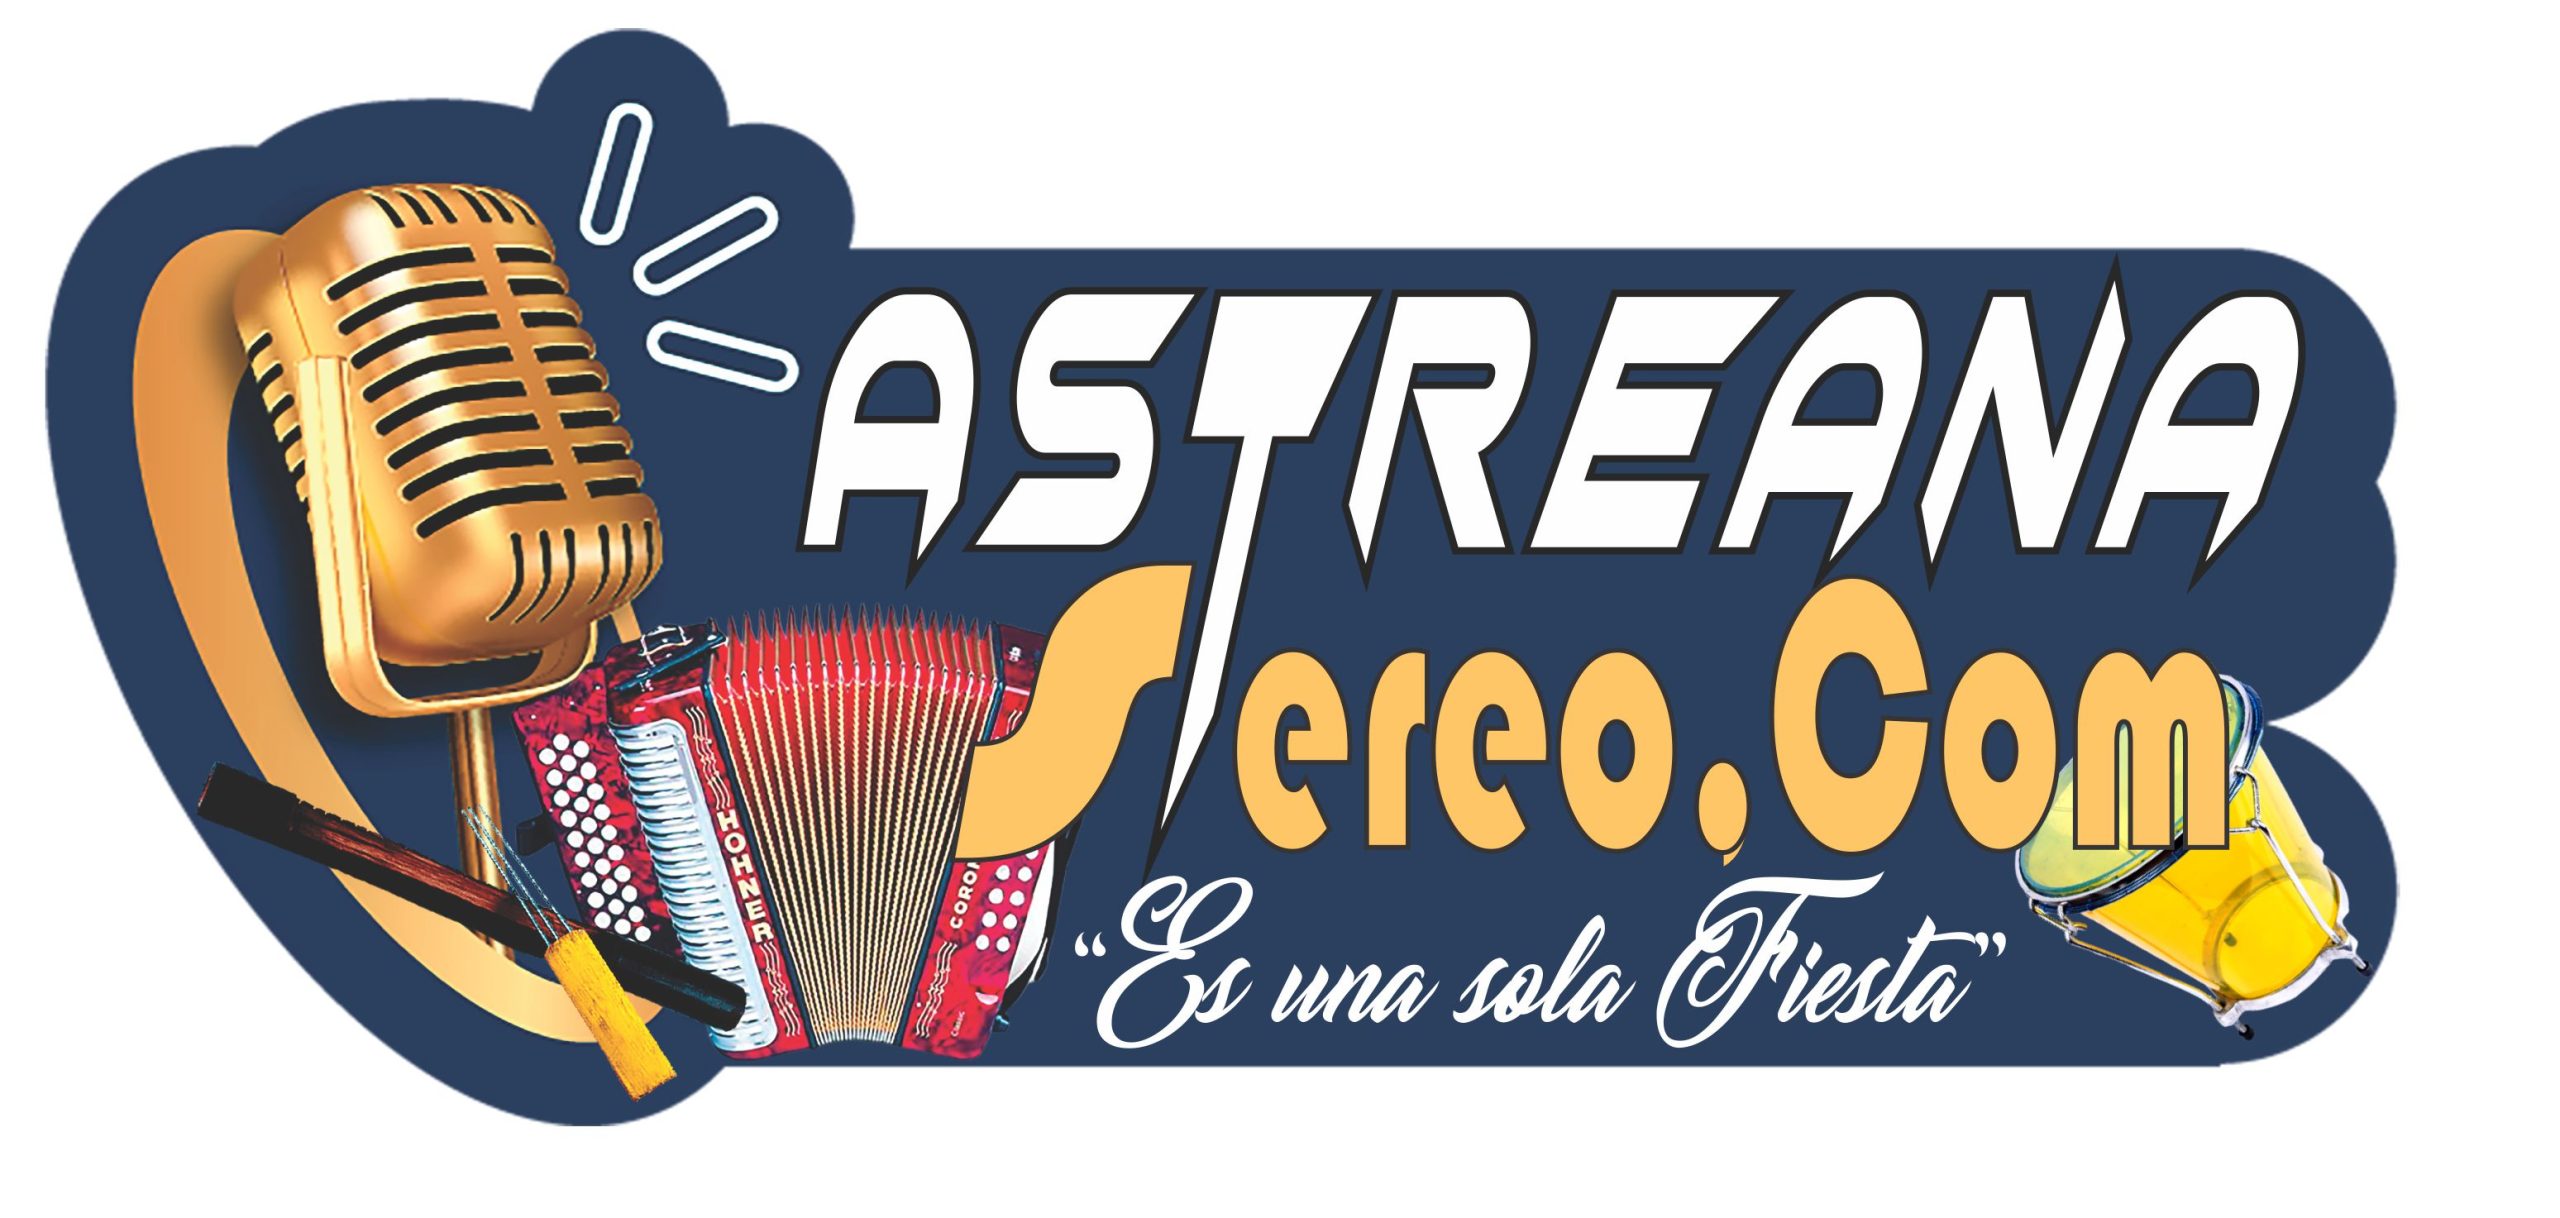 Astreana Stereo